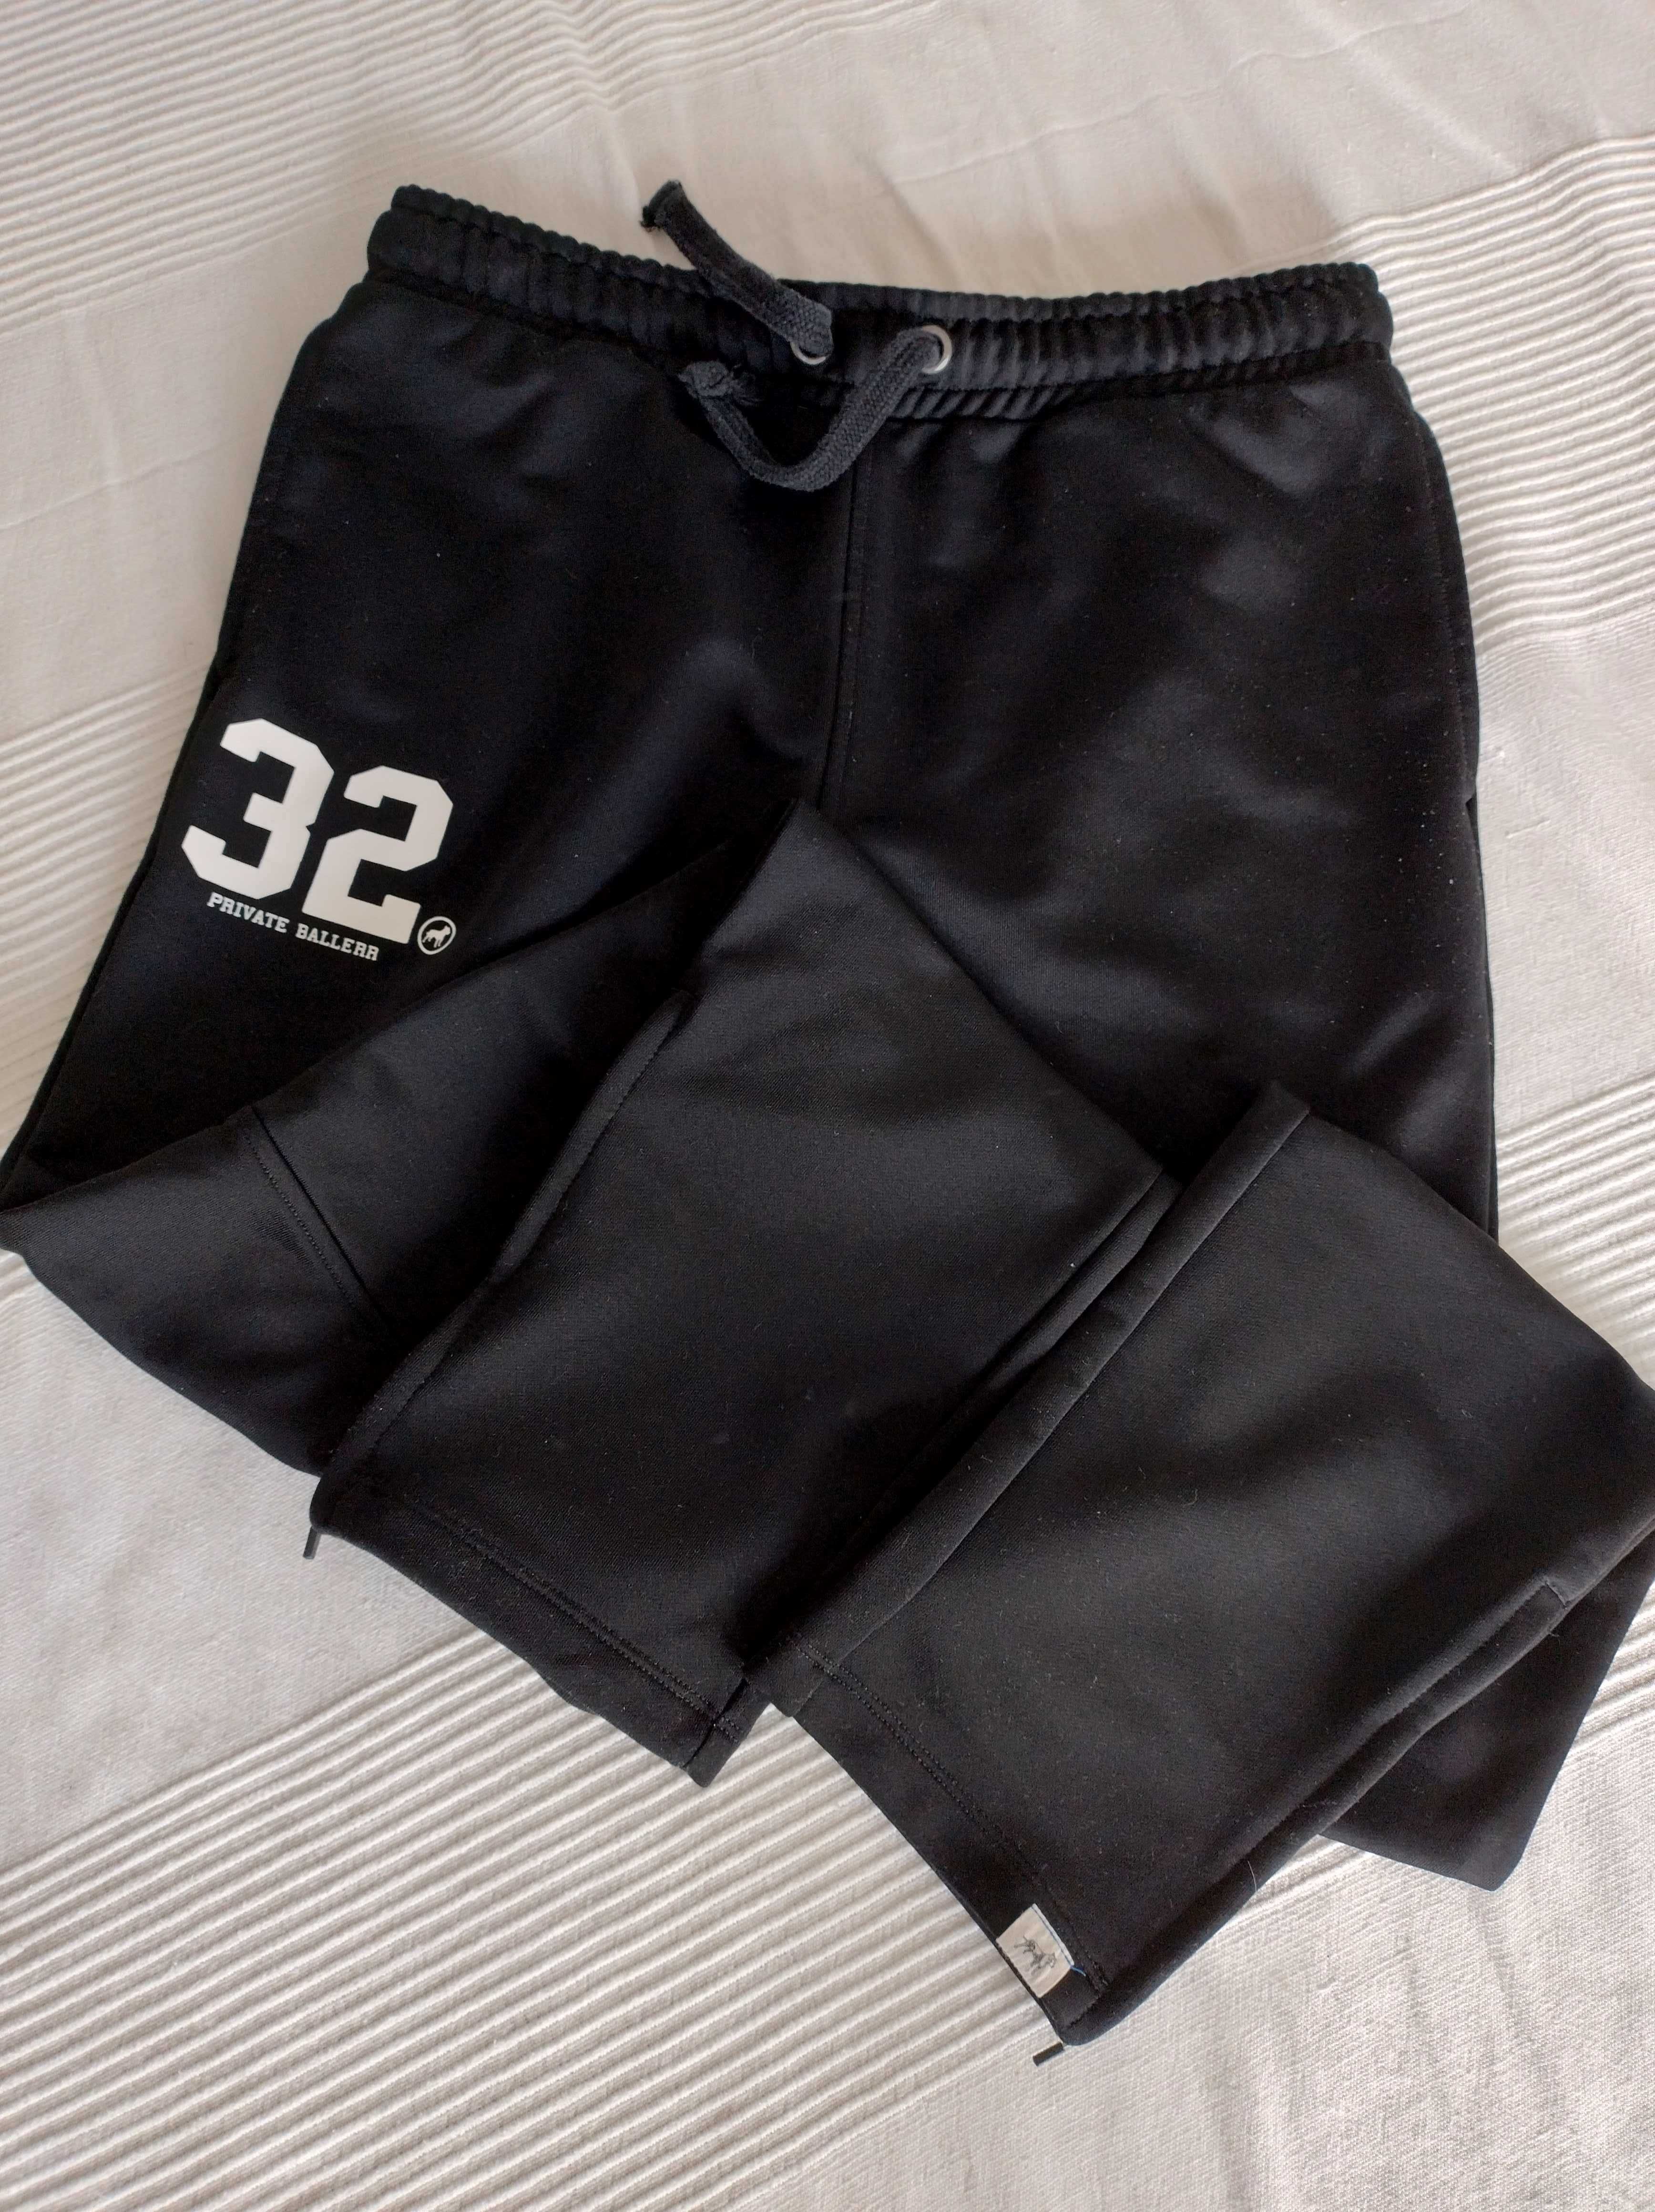 spodnie dresowe czarne trade mark private ballerr w rozmiarze M